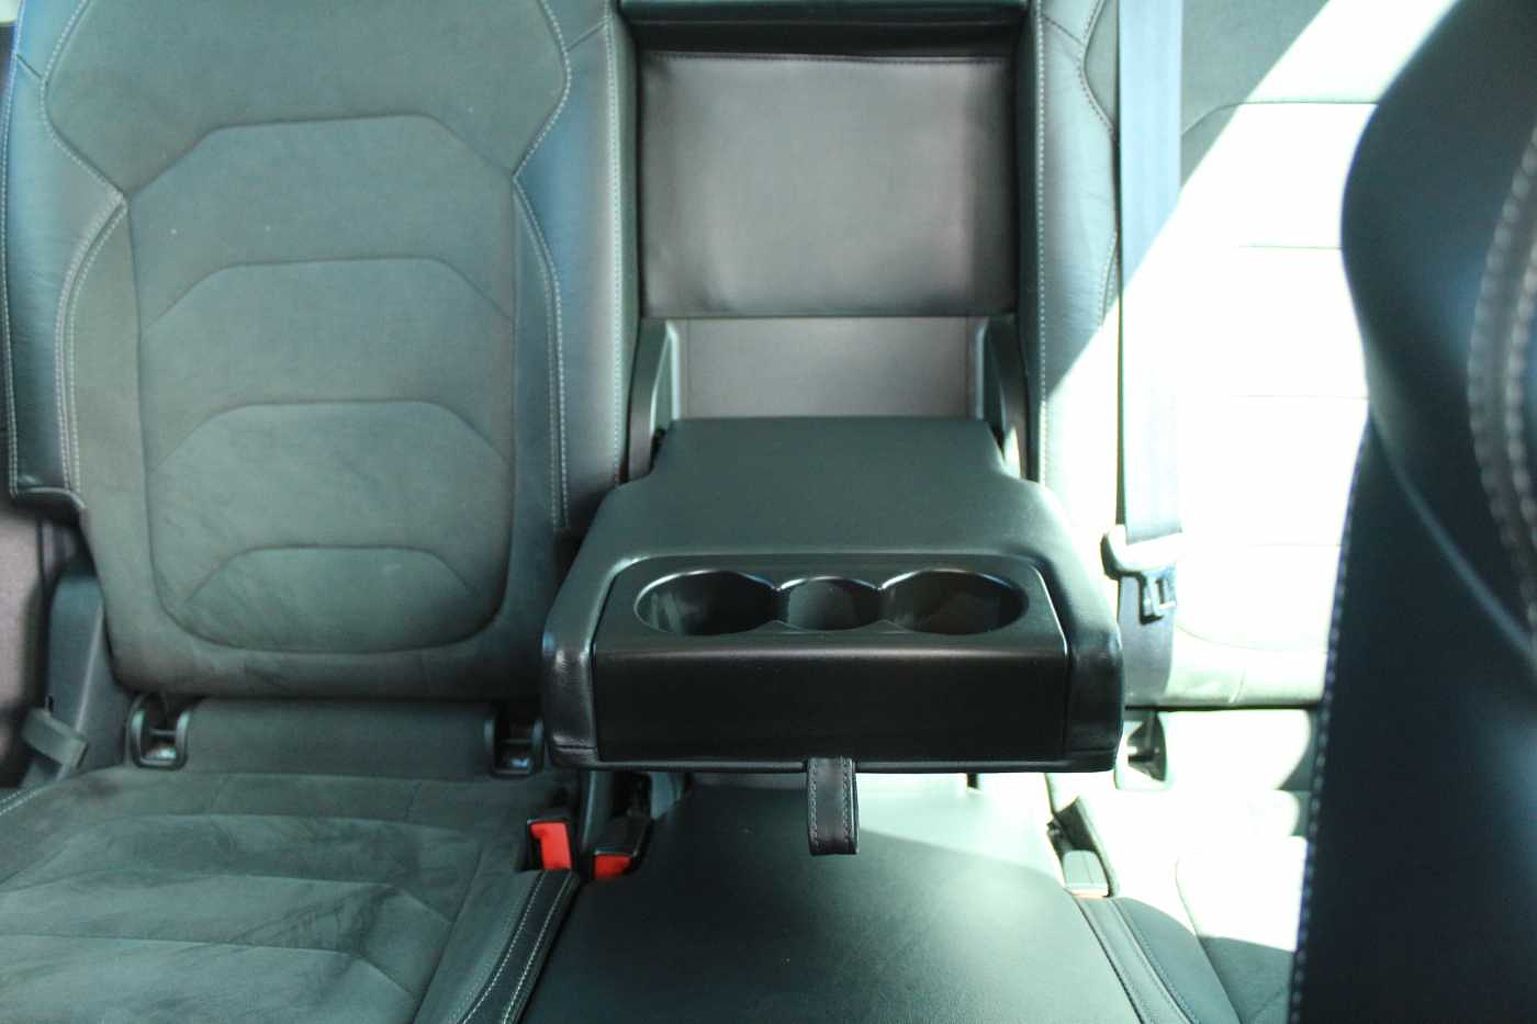 SKODA Kodiaq 1.5 TSI (150ps) SE L (7 seats) SUV